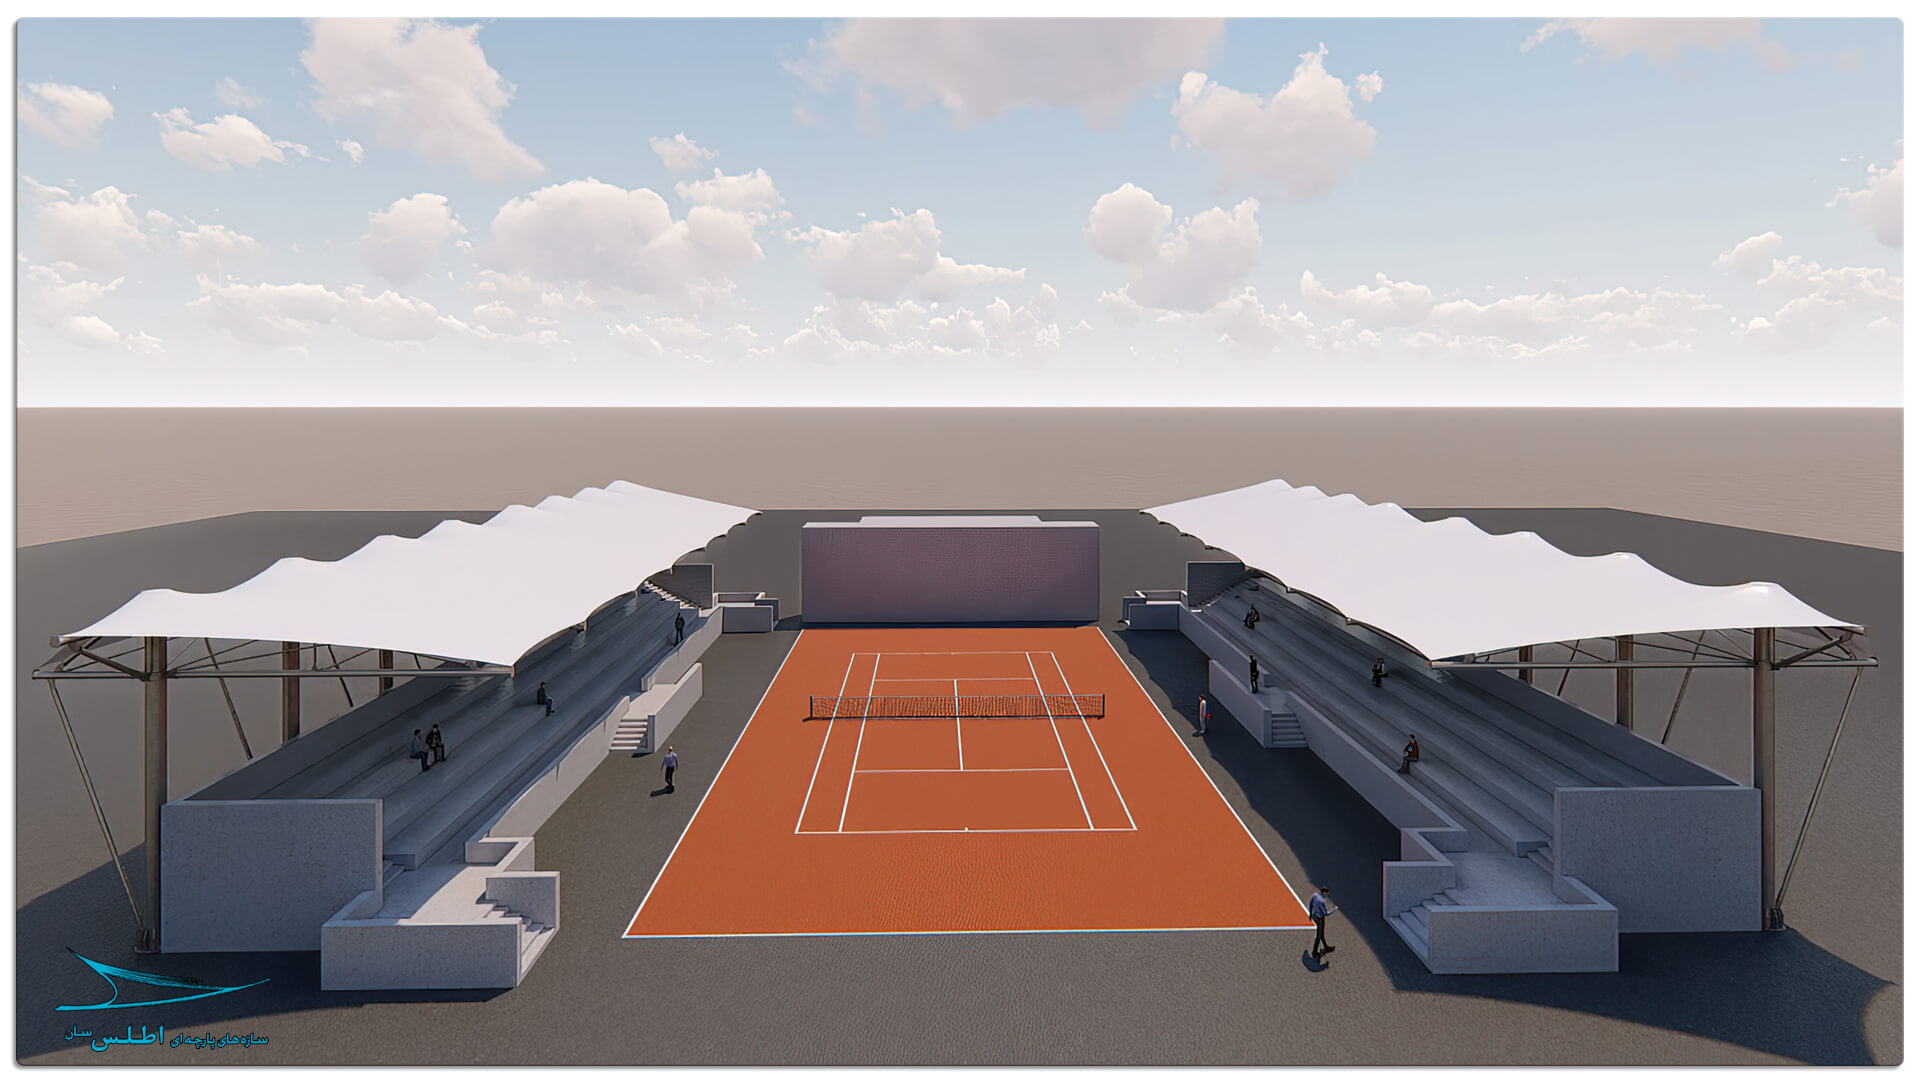 رندر و مدل سازی سه بعدی سازه پارچه ای سقف استادیوم تنیس کیش | سازه پارچه ای اطلس سان